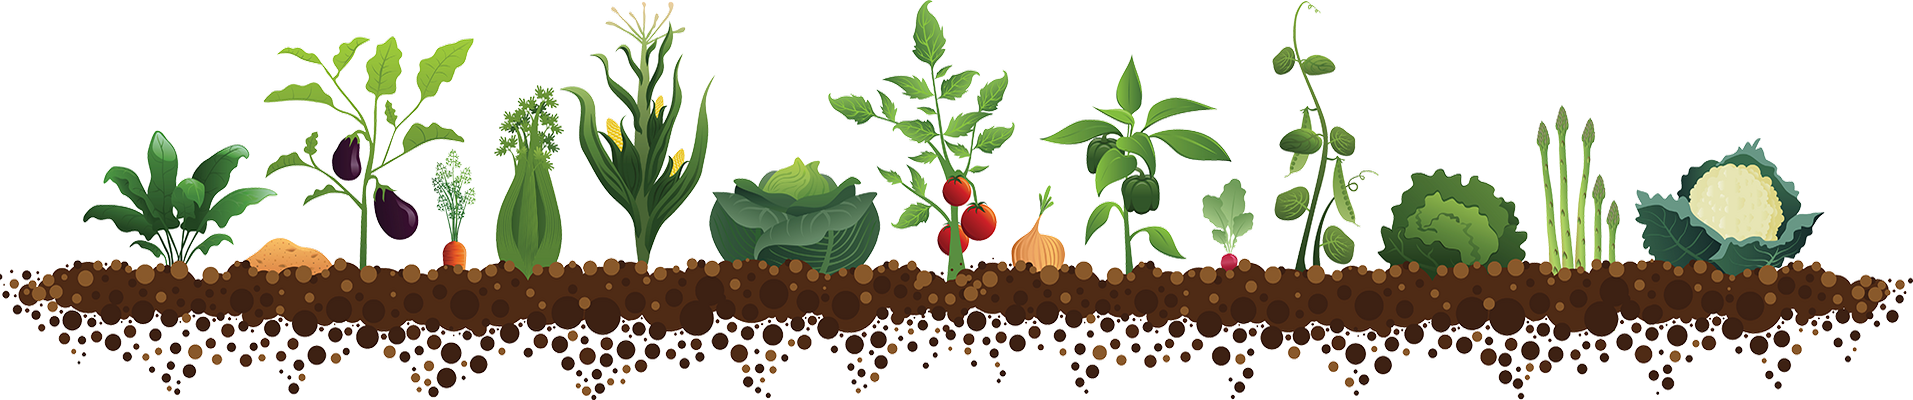 Посів насіння кропу в грунт червень 2020 коли сіяти в теплицю, висаджувати насіння, місячний календар